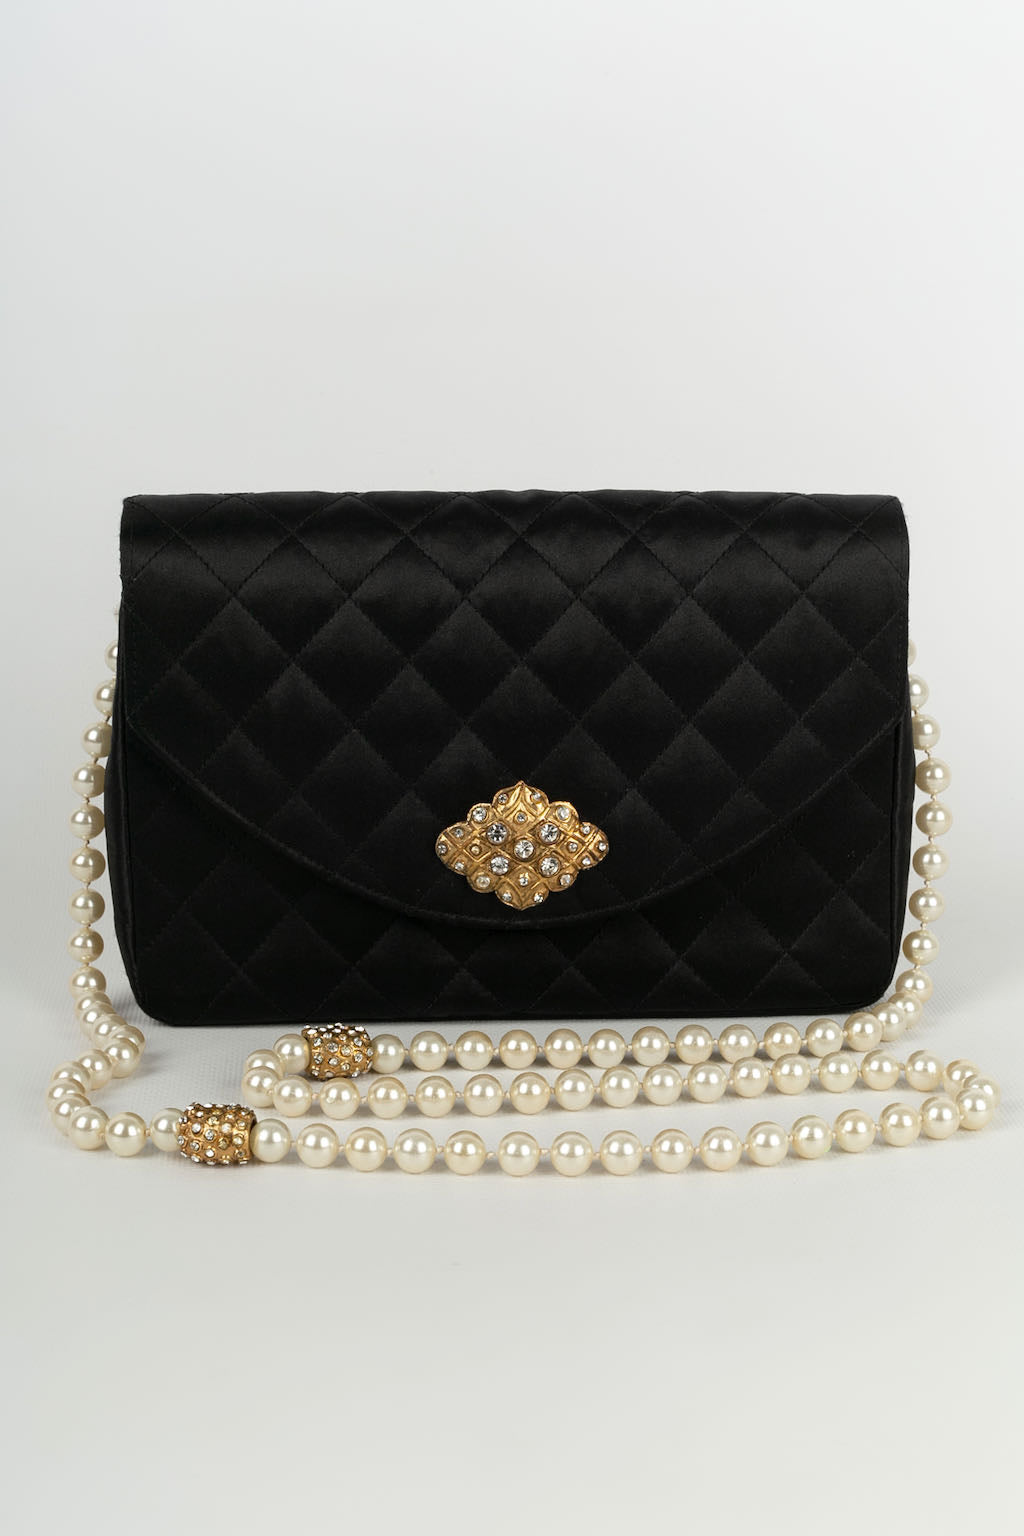 Chanel jewel bag